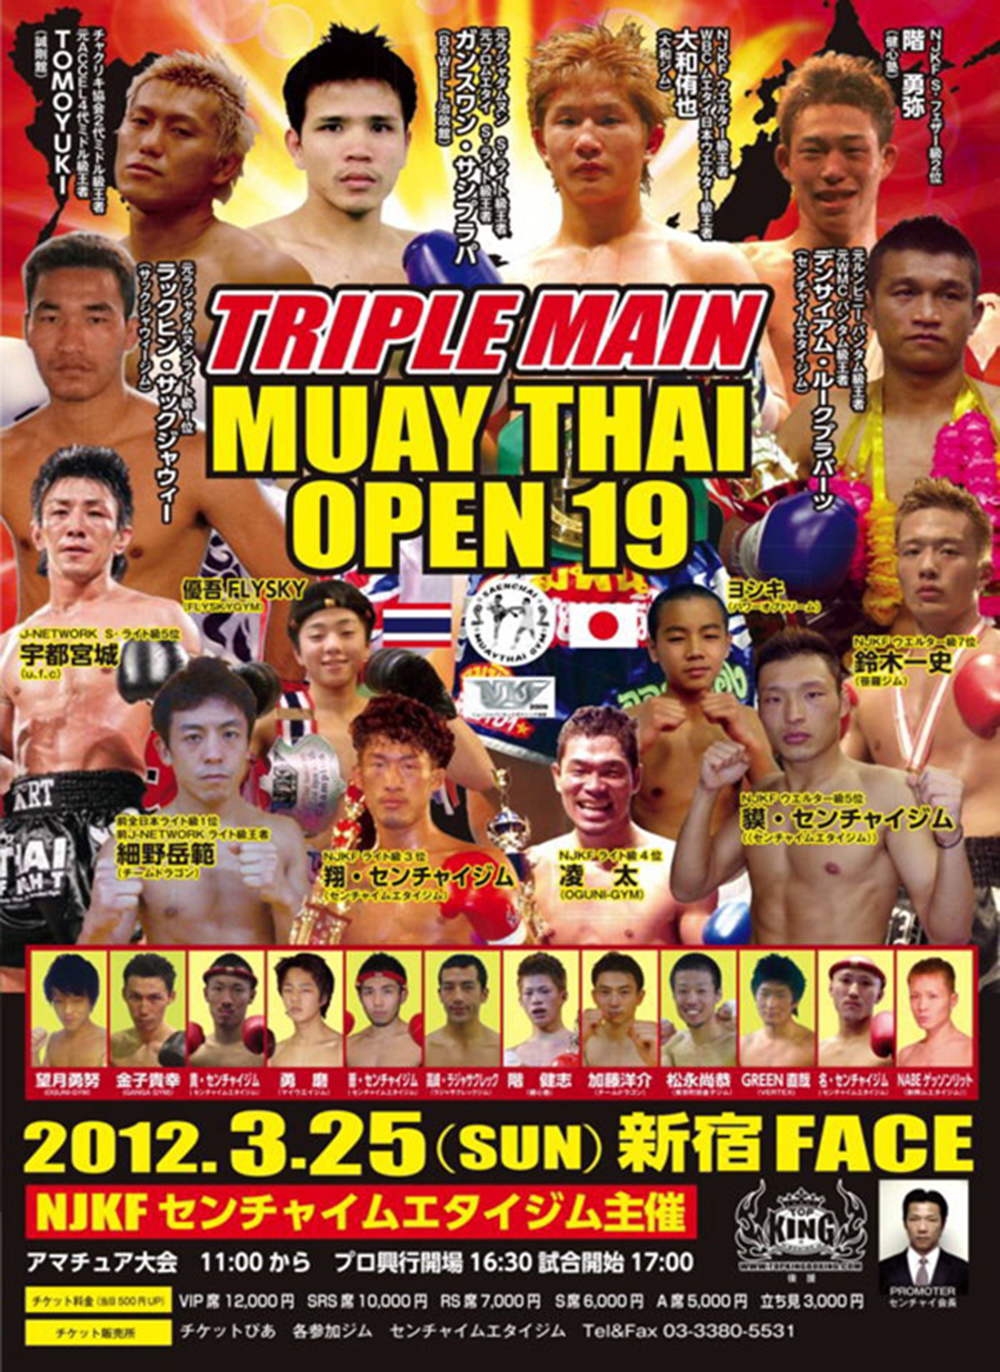 Muay Thai Open 24